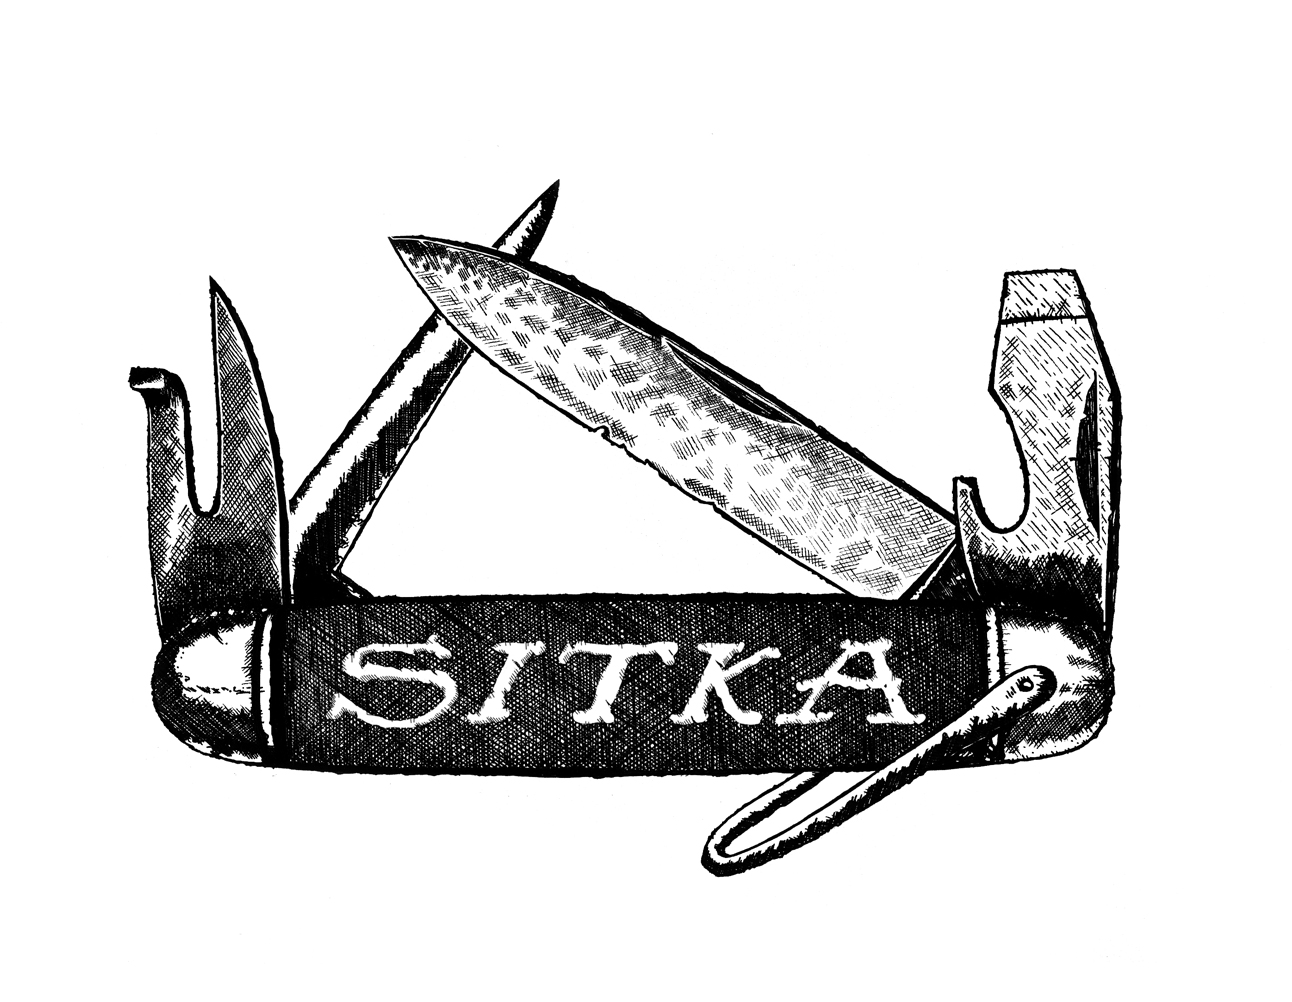 SITKA-multiknife-for-LNR.jpg